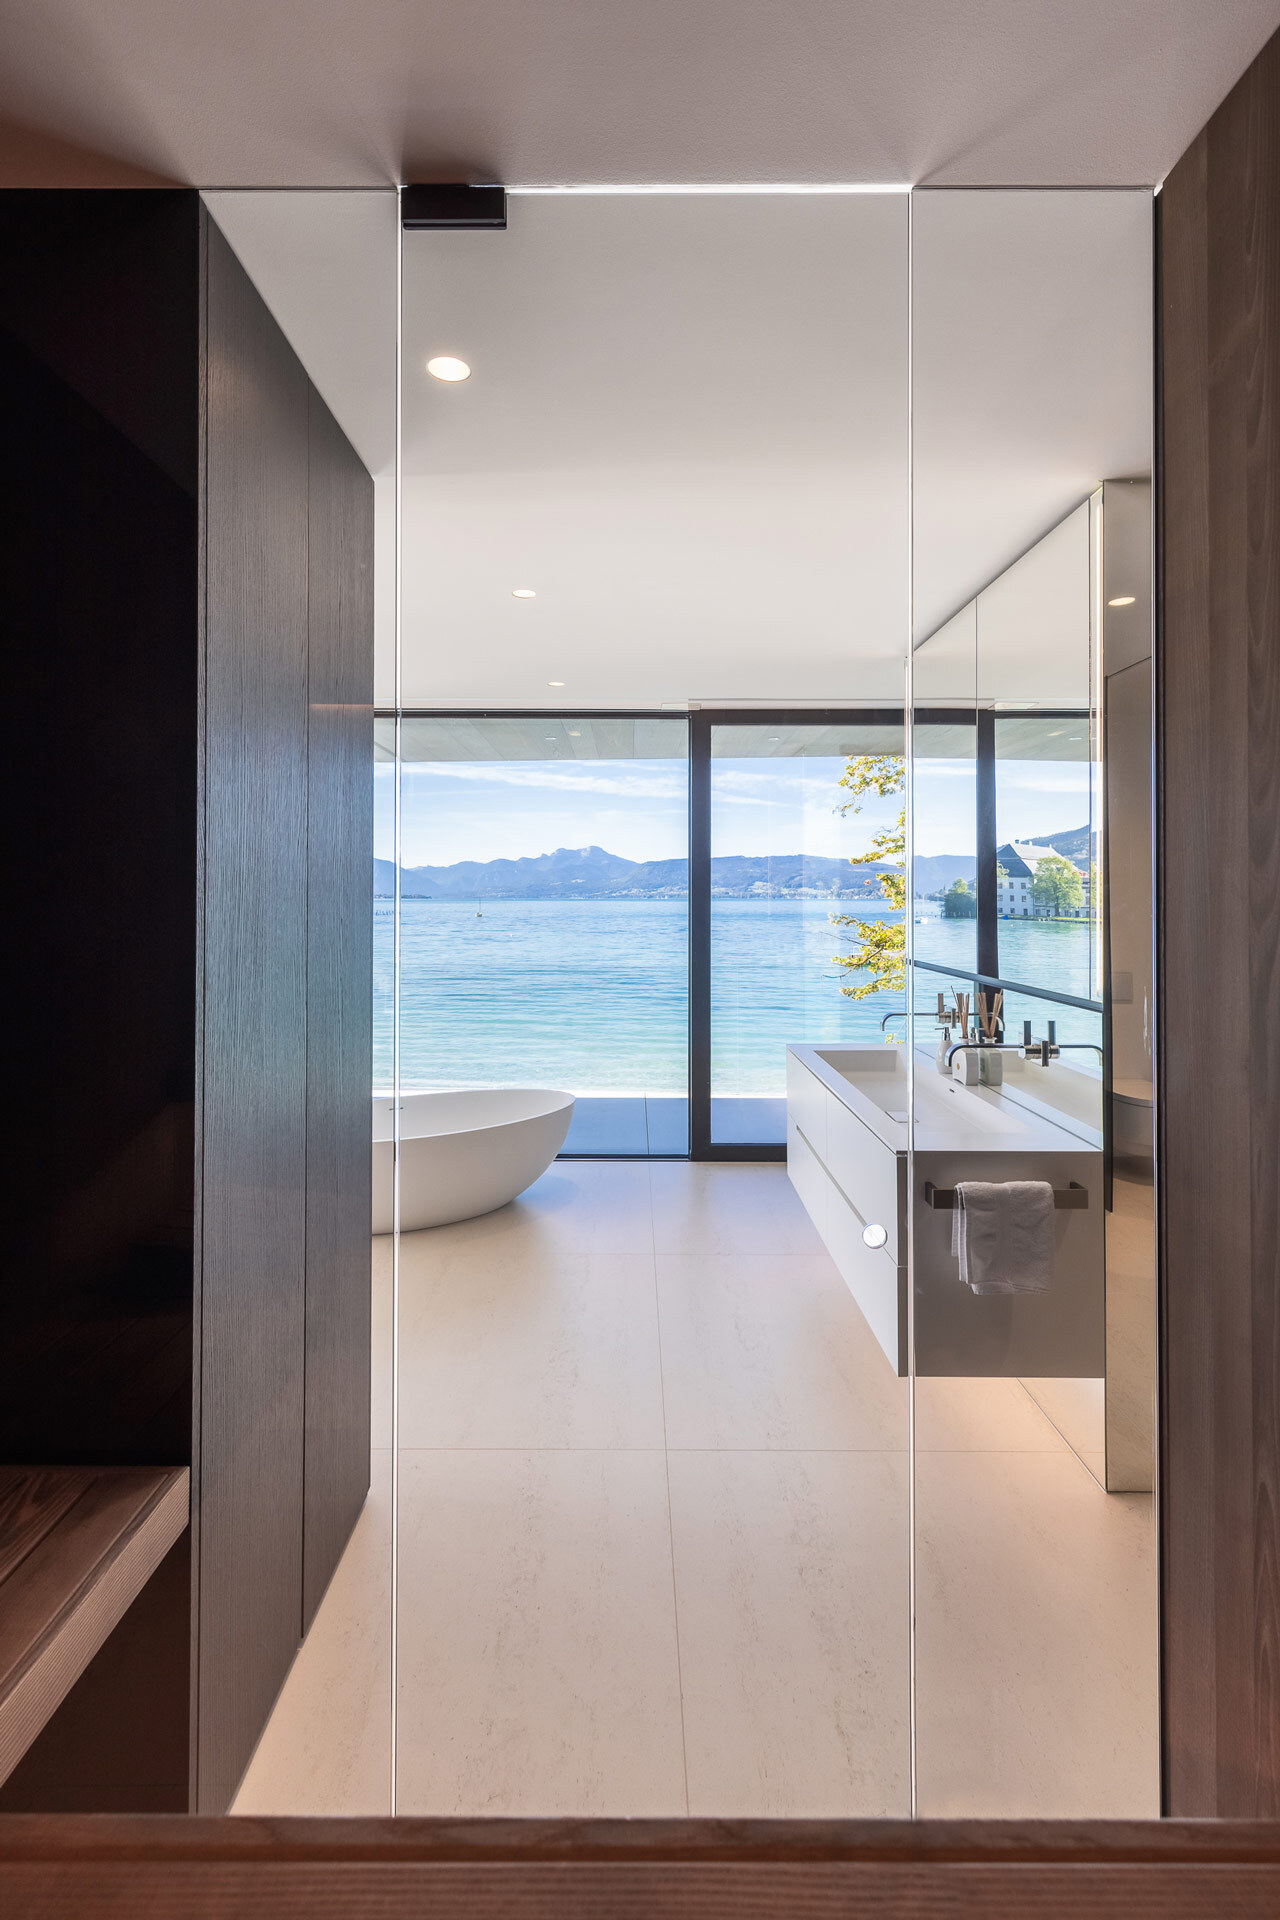 Private Spa im Badezimmer mit freistehender Badewanne und Sauna mit Panoramablick auf den See.